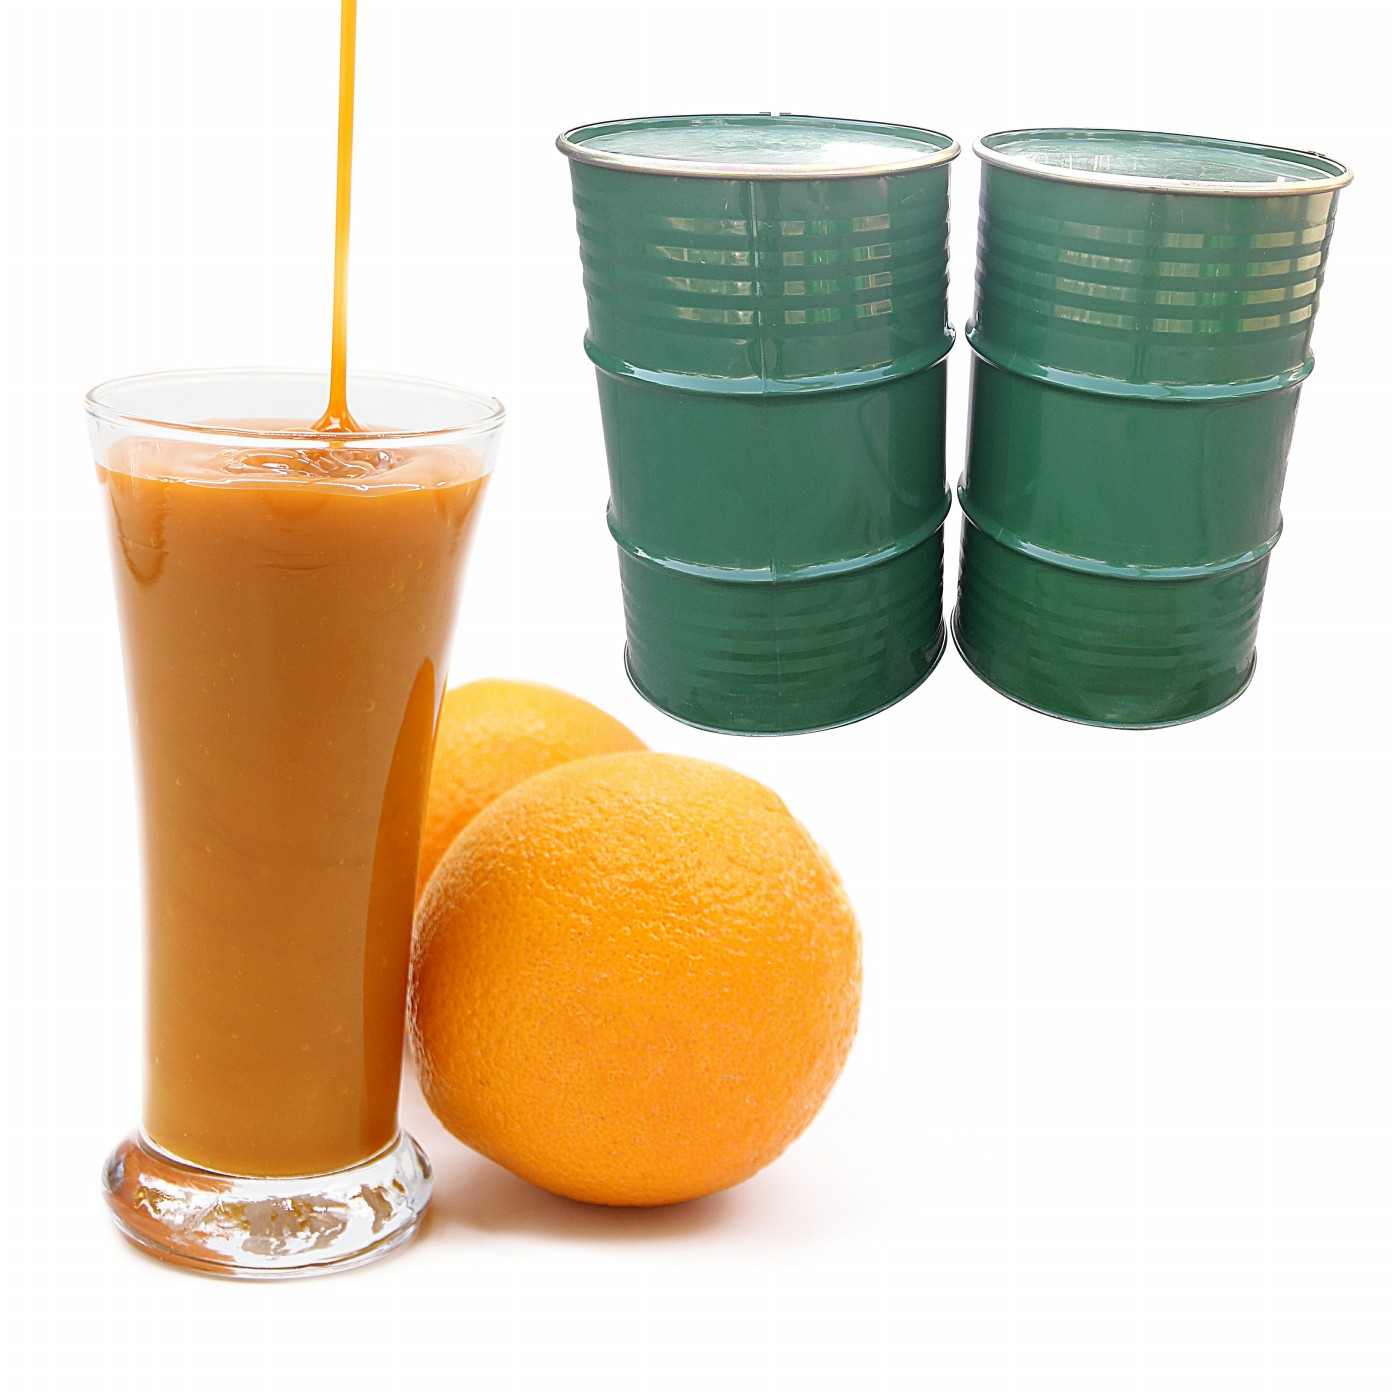 Concentrado de jugo de naranja